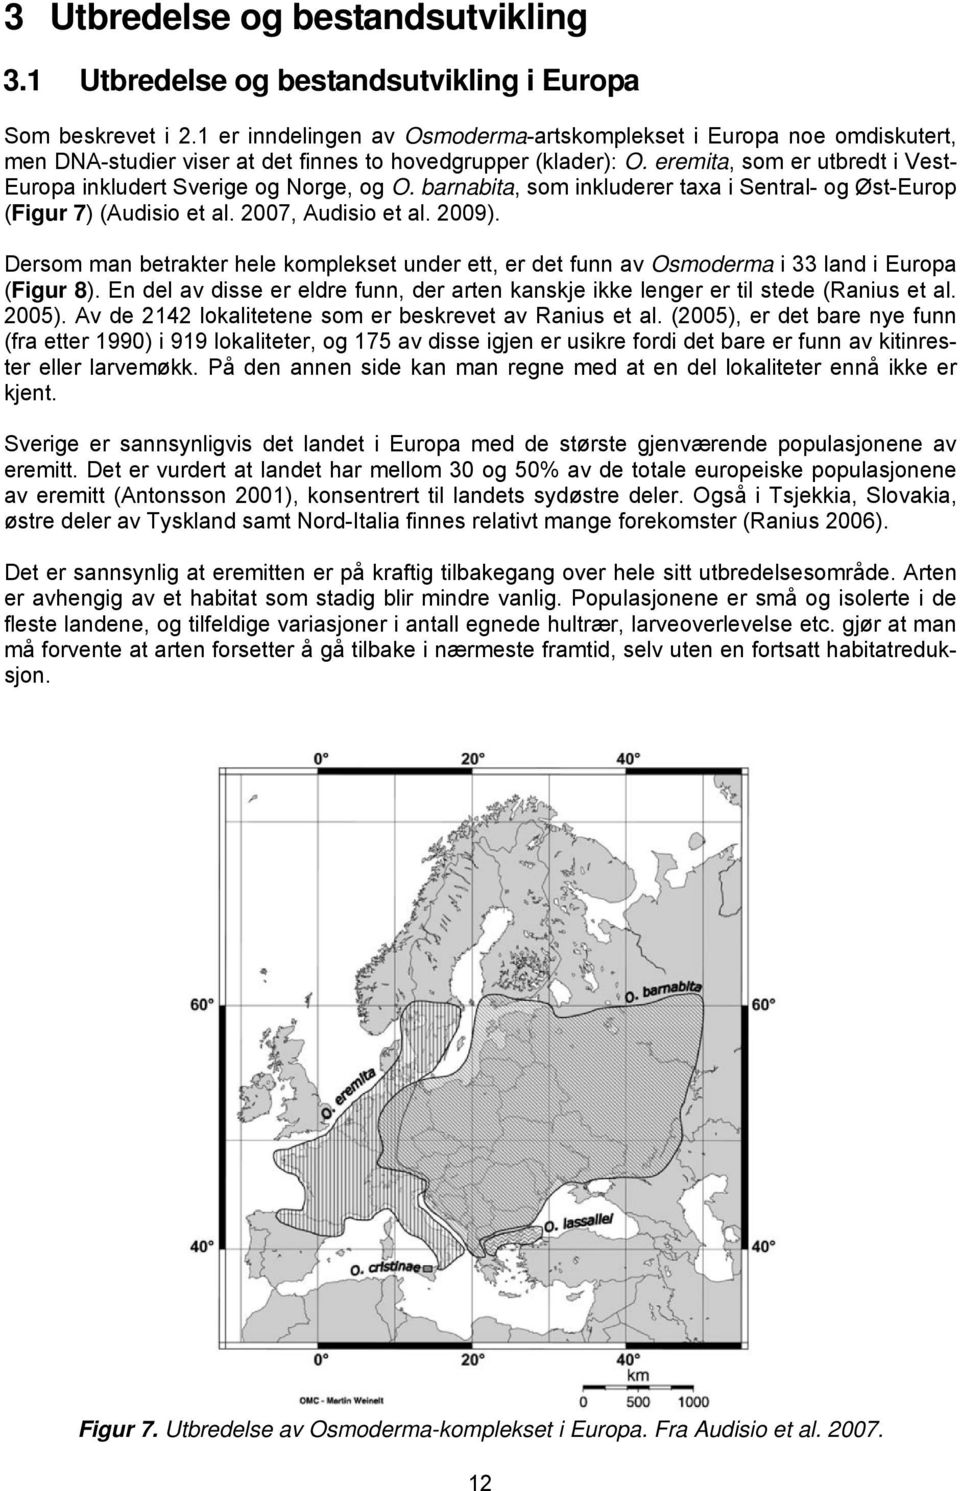 eremita, som er utbredt i Vest- Europa inkludert Sverige og Norge, og O. barnabita, som inkluderer taxa i Sentral- og Øst-Europ (Figur 7) (Audisio et al. 2007, Audisio et al. 2009).